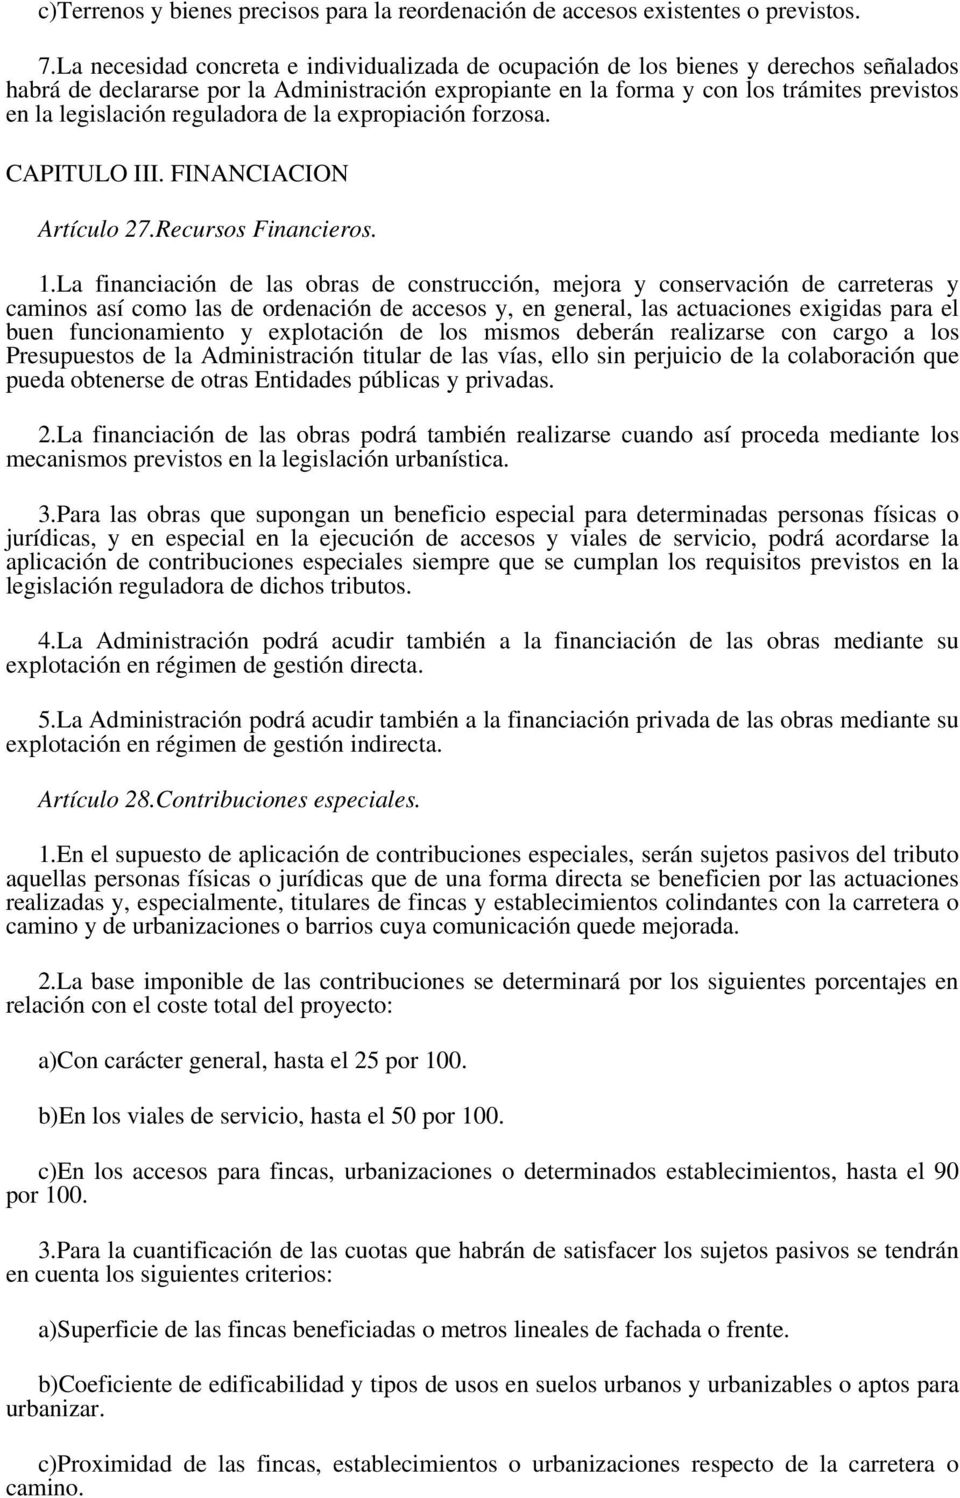 legislación reguladora de la expropiación forzosa. CAPITULO III. FINANCIACION Artículo 27.Recursos Financieros. 1.